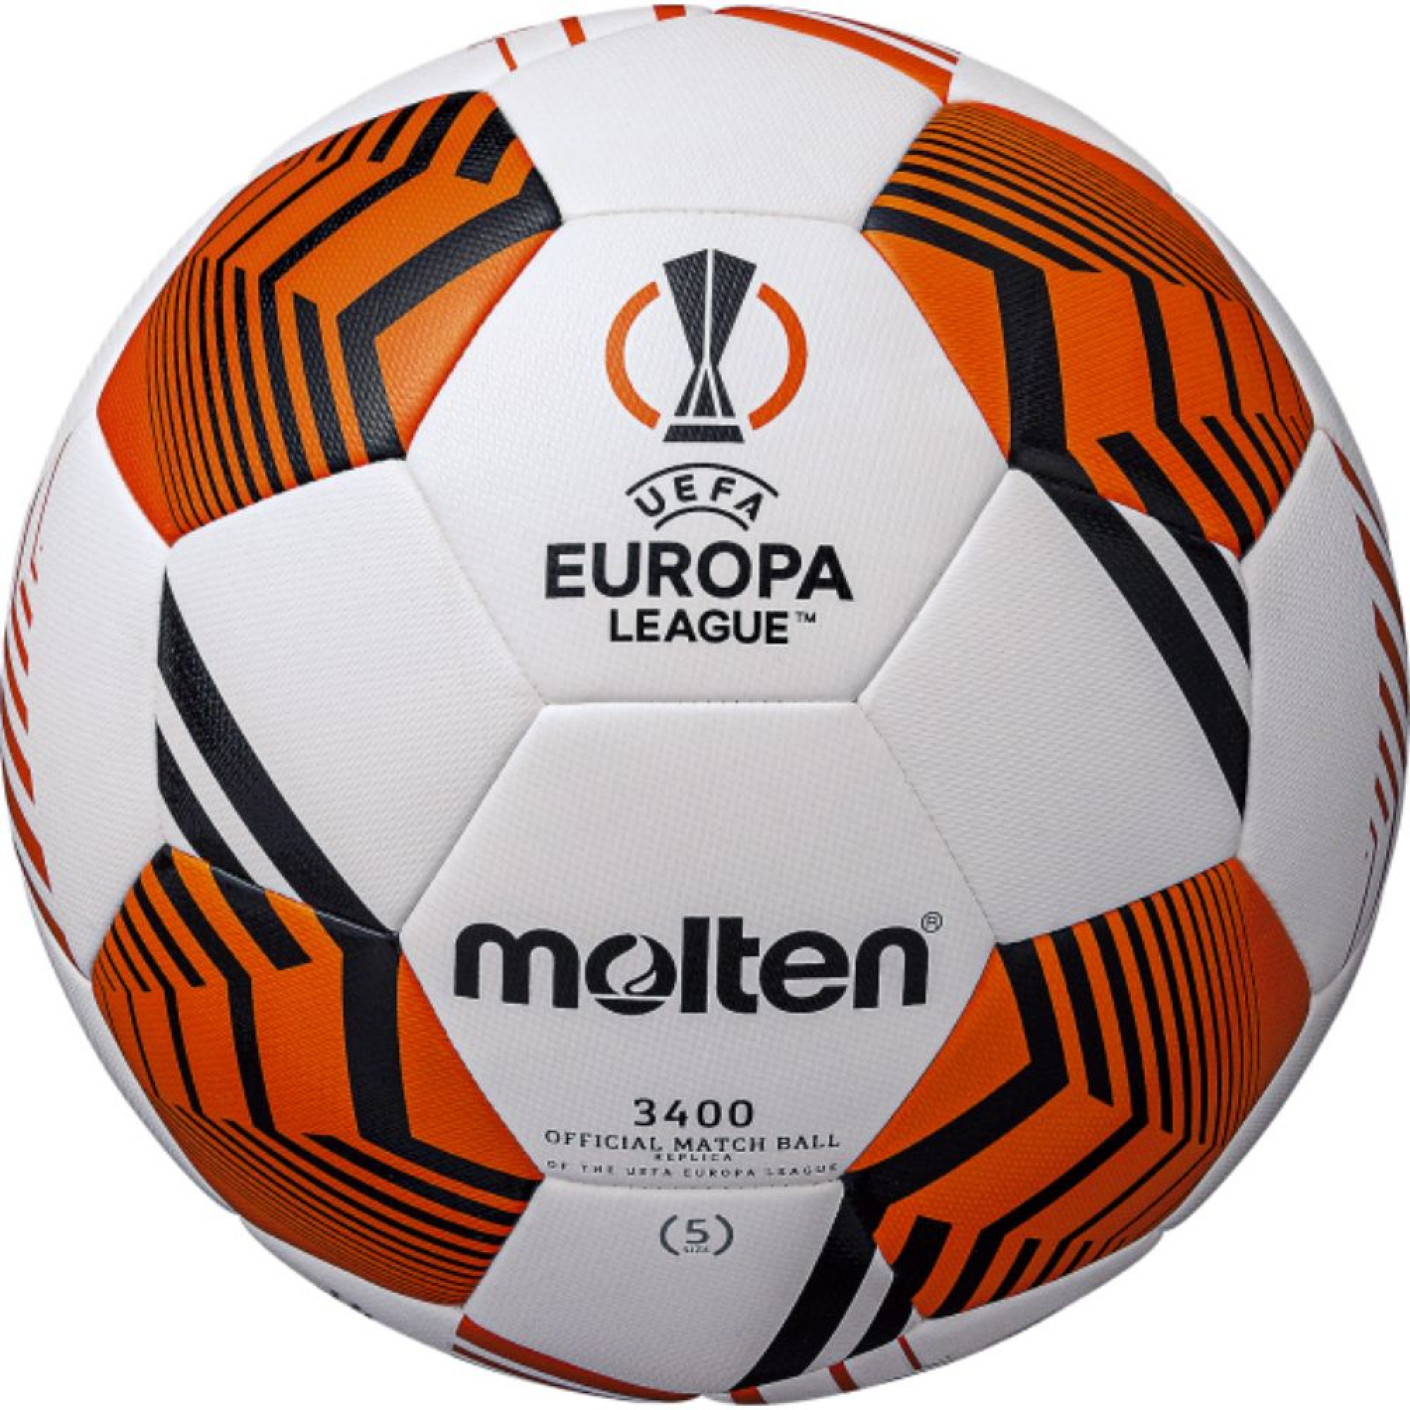 Molten Europa League Training Ballon Football Taille 5 Blanc Noir Orange